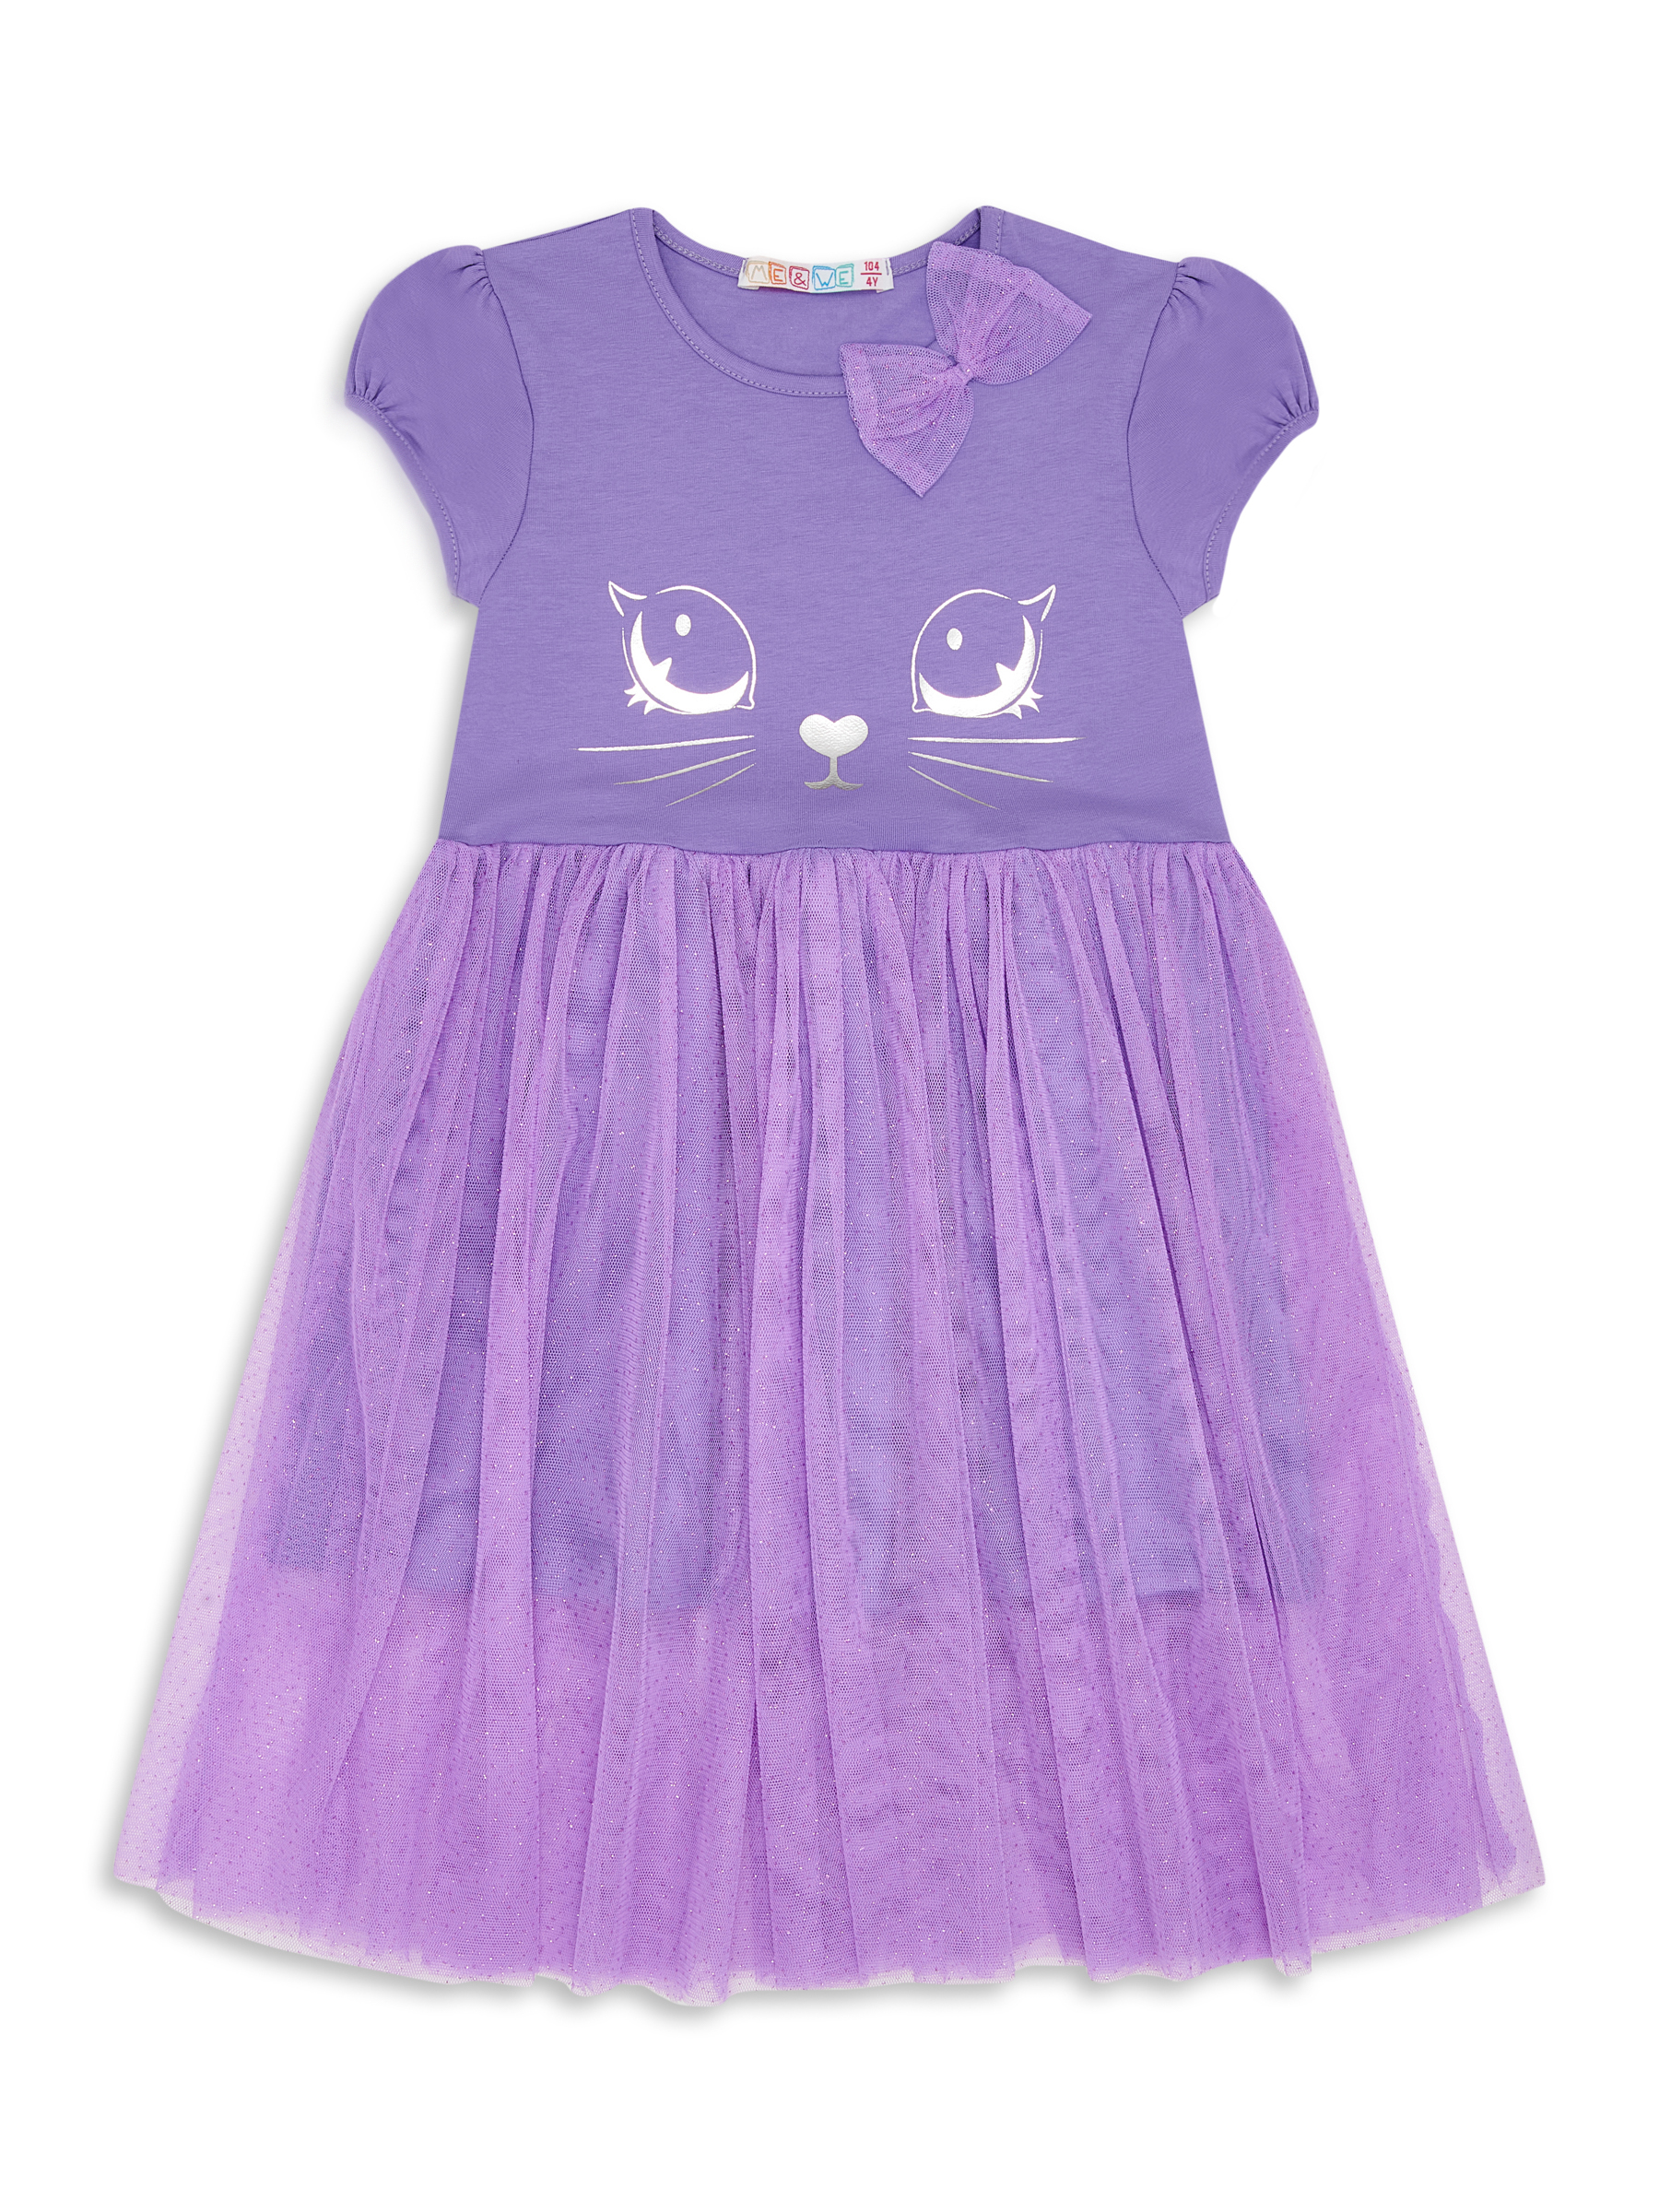 Платье детское Me&We KG218-J601-699 цв. фиолетовый р. 98 пальто детское orso bianco дизель фиолетовый 128